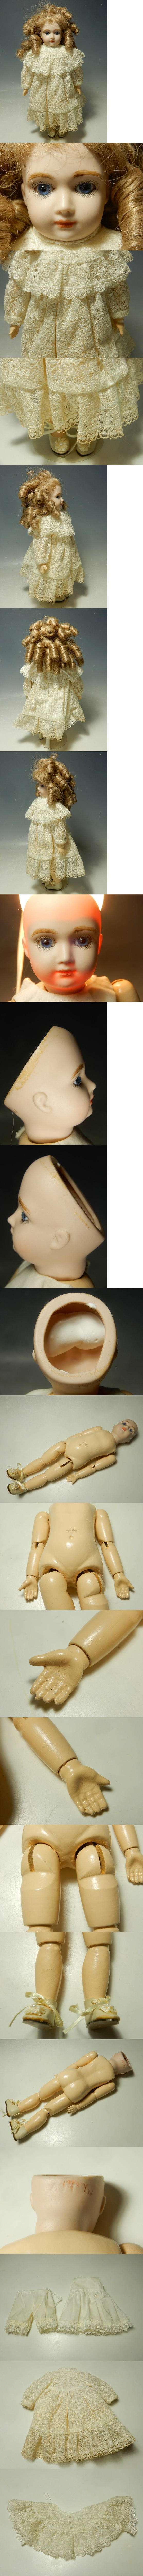 通年定番995/○ビスクドール 女の子 アンティーク 西洋人形 陶器人形 ビスクドール